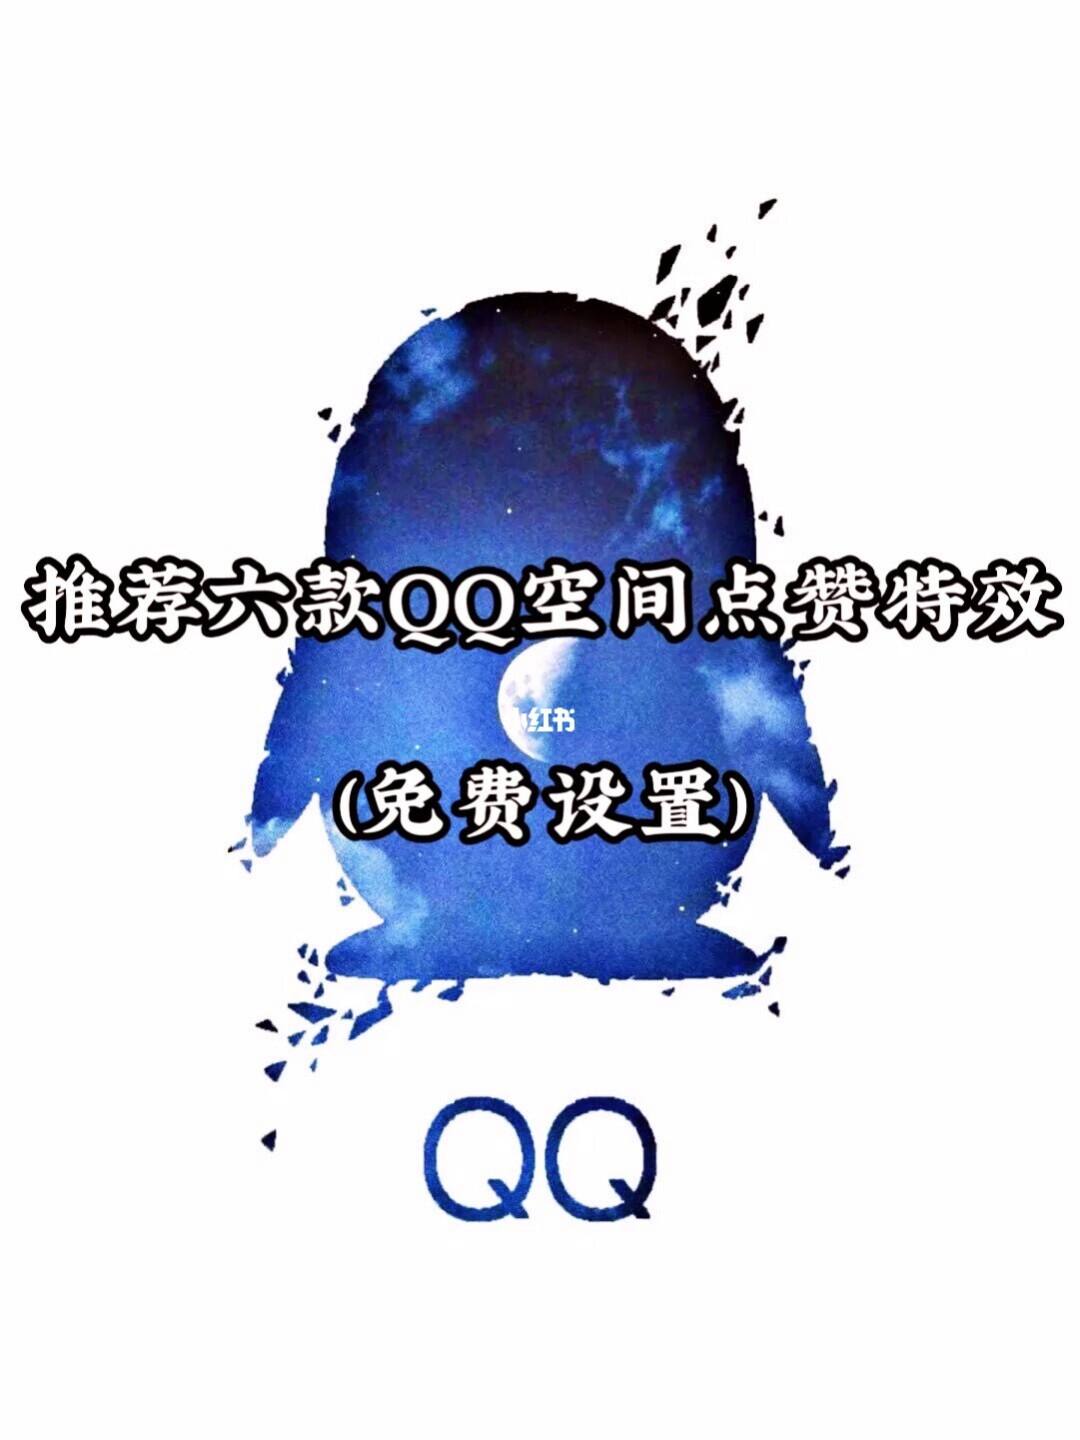 刷qq空间赞免费网站的简单介绍